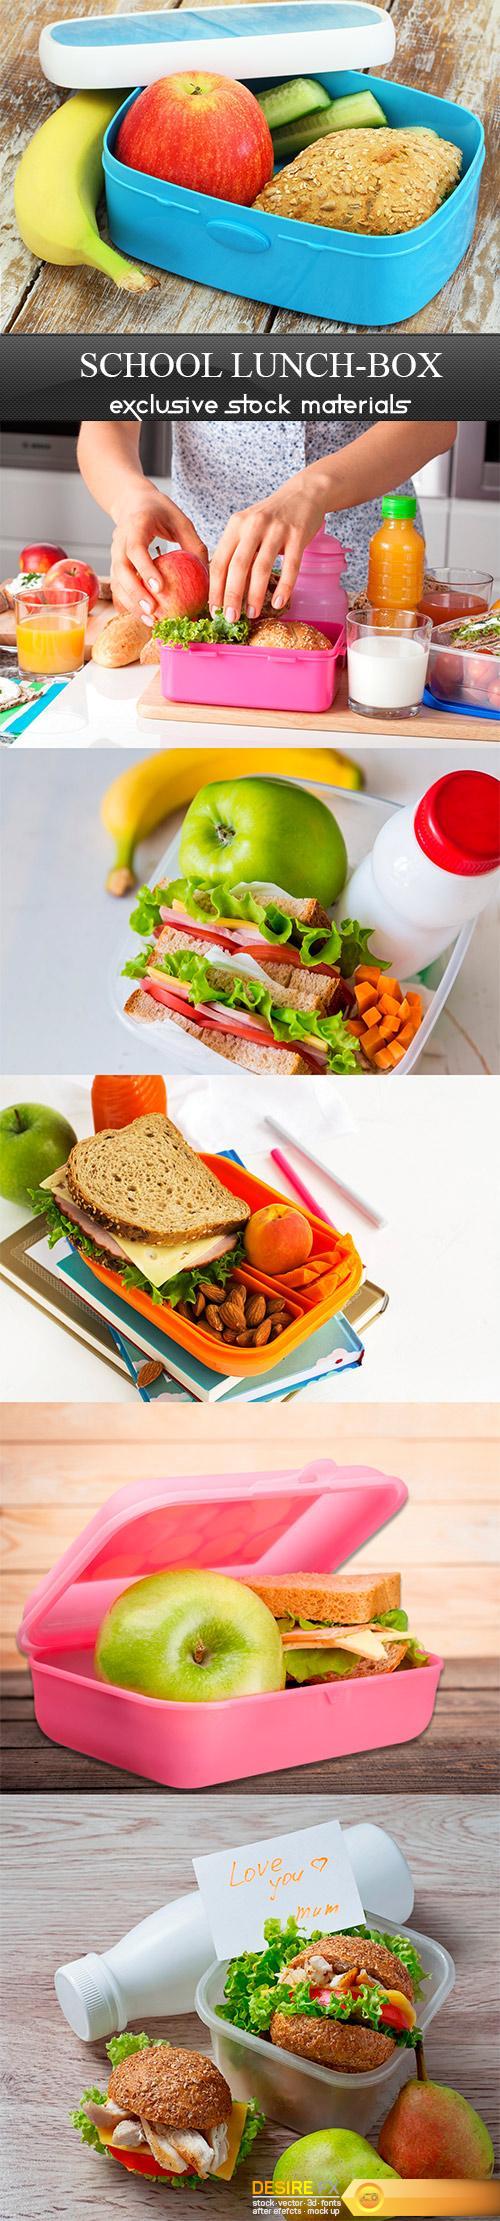 School lunch-box - 6UHQ JPEG